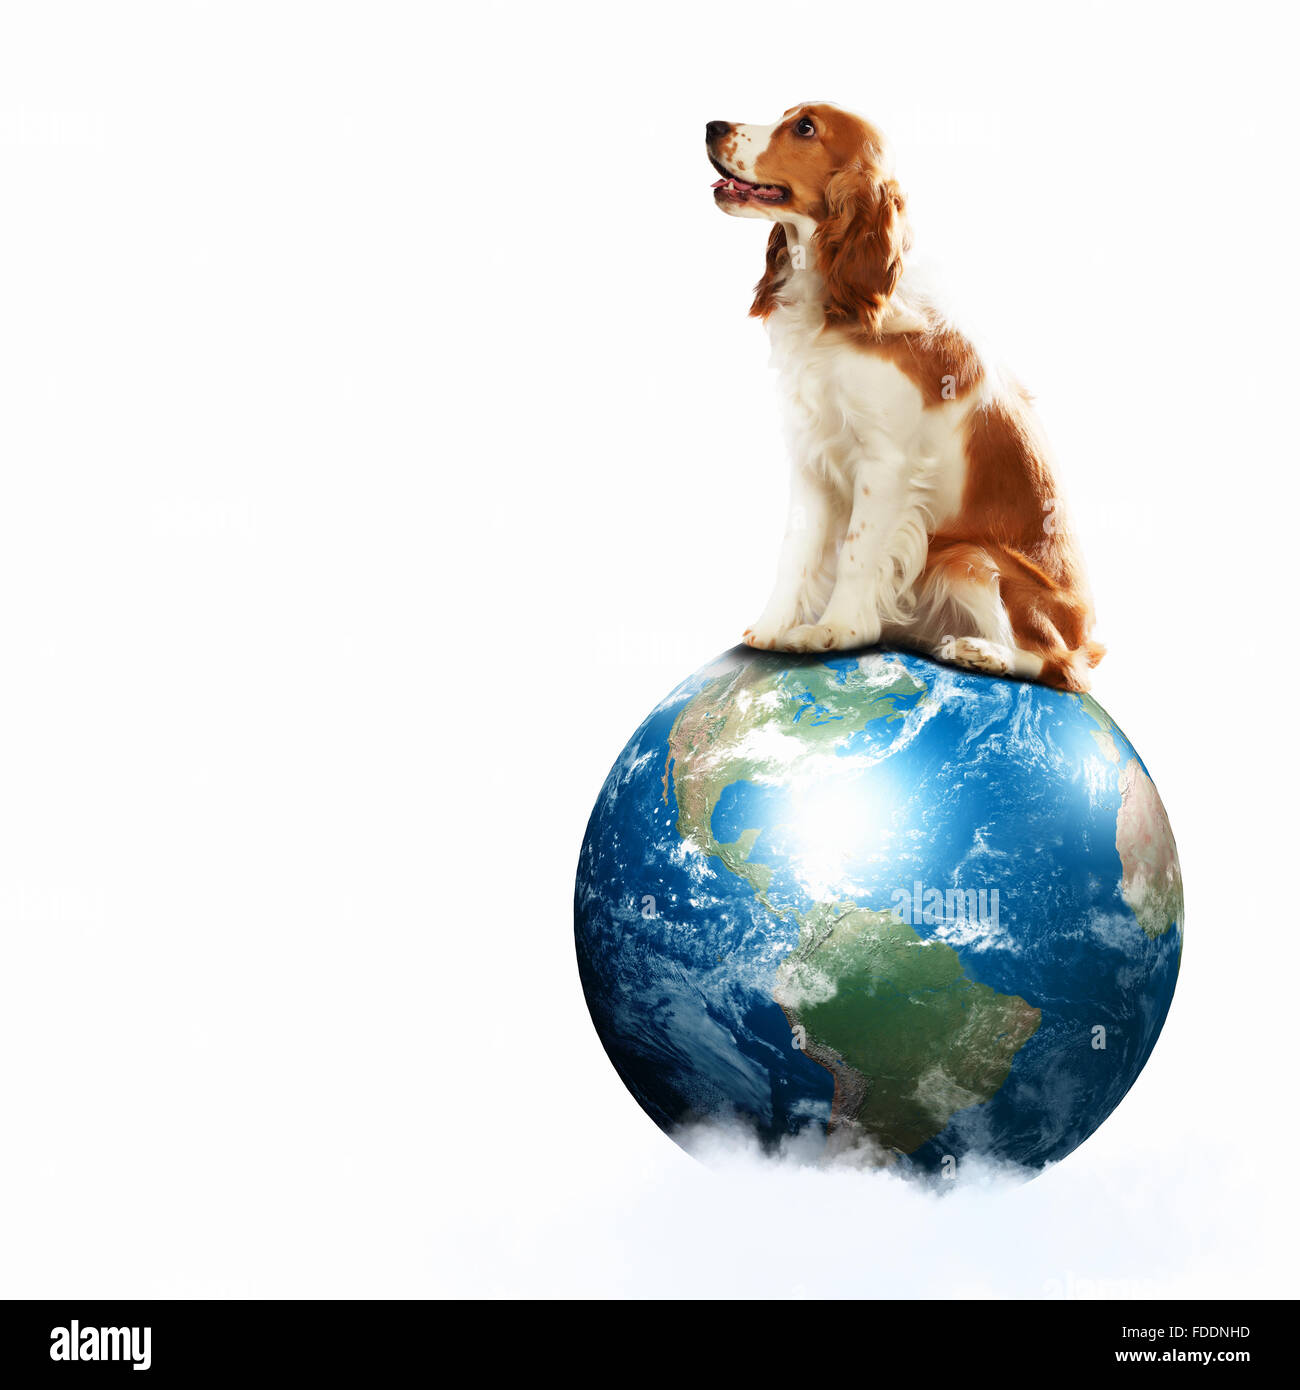 Животные на земном шаре. Собака на земном шаре. Собака с земным шаром. Кролик на земном шаре. Изображение земного шара с собакой.